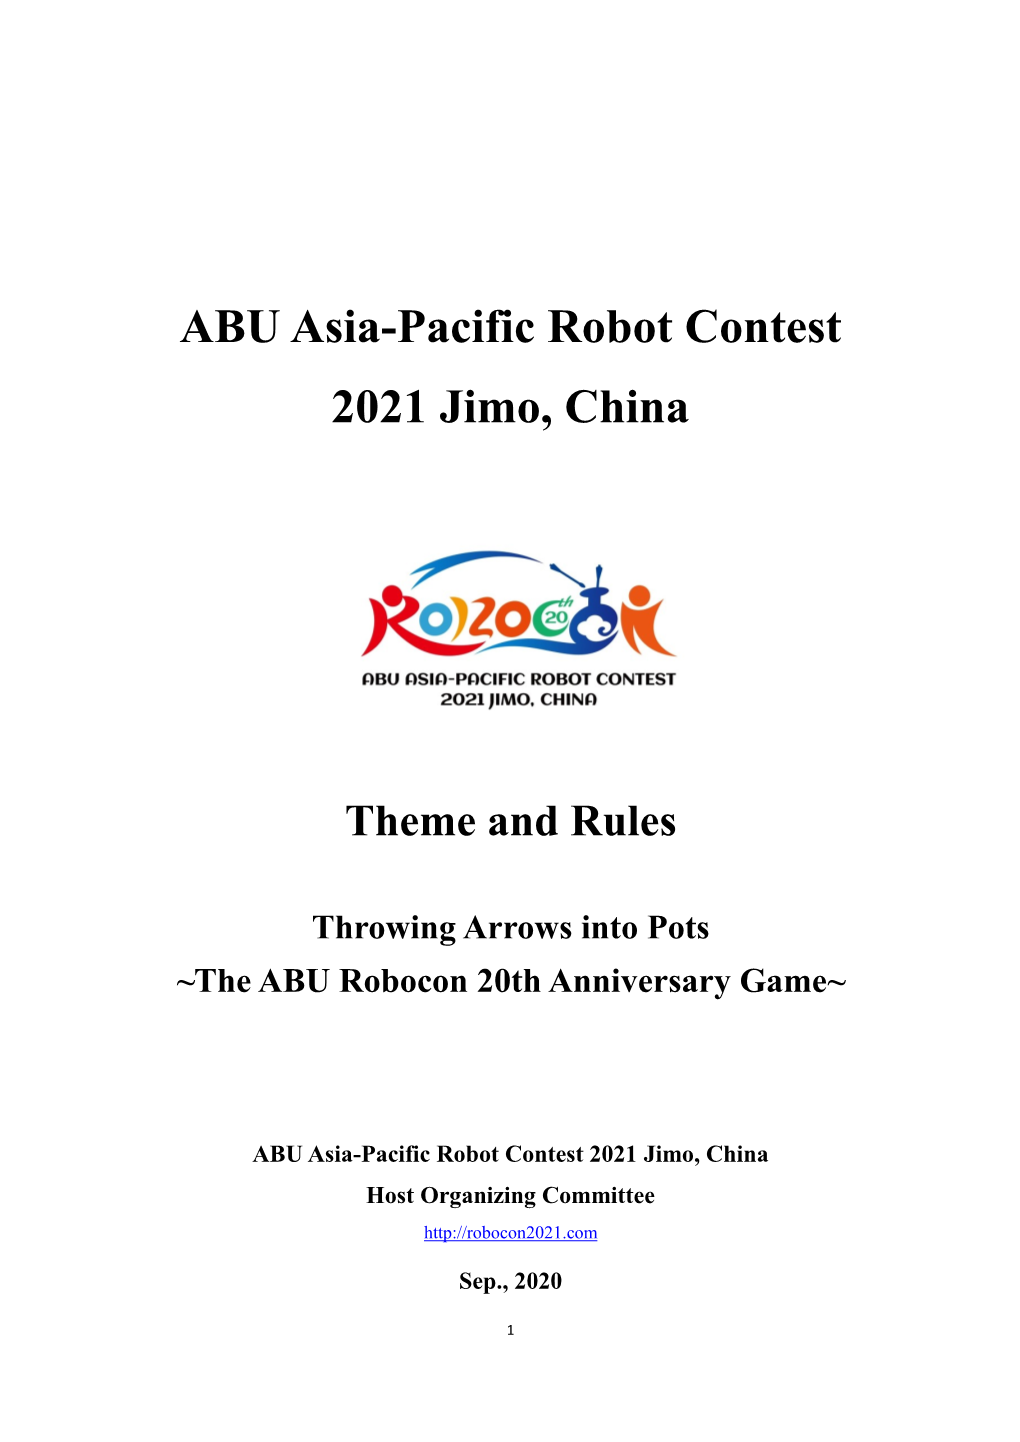 ABU Asia-Pacific Robot Contest 2021 Jimo, China